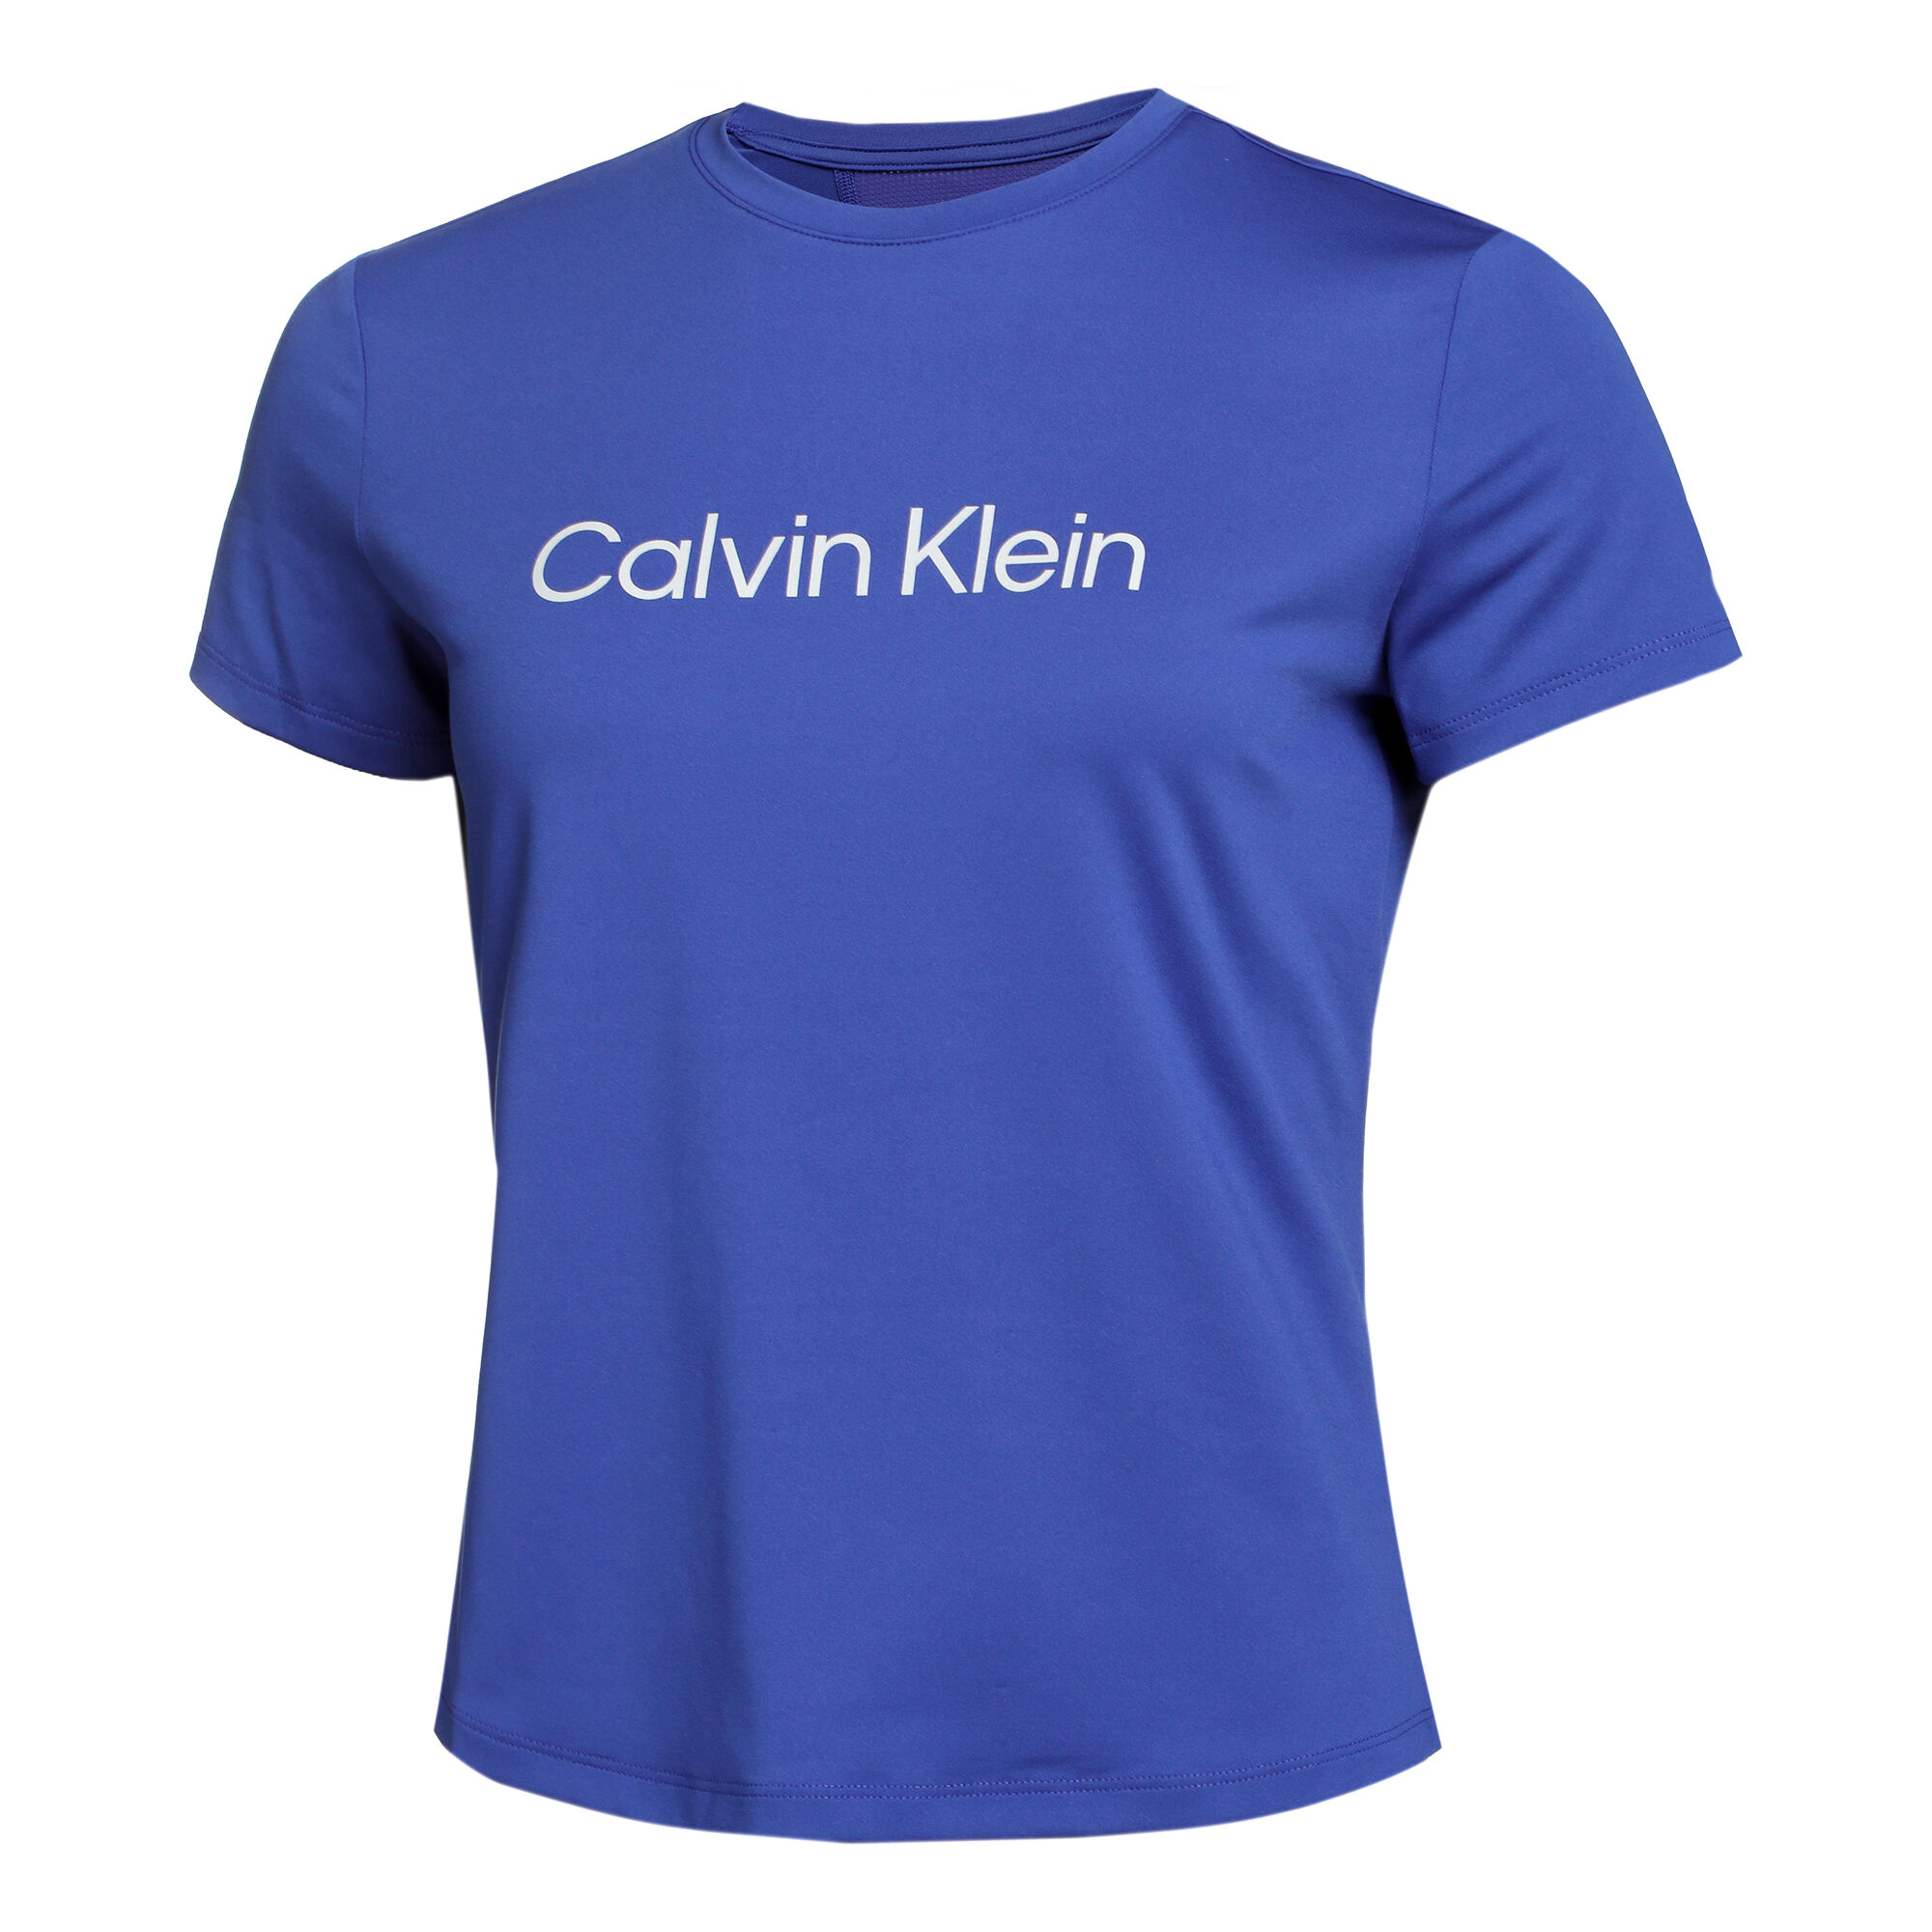 Calvin Klein T-Shirt Damen Blau online kaufen | Tennis Point DE